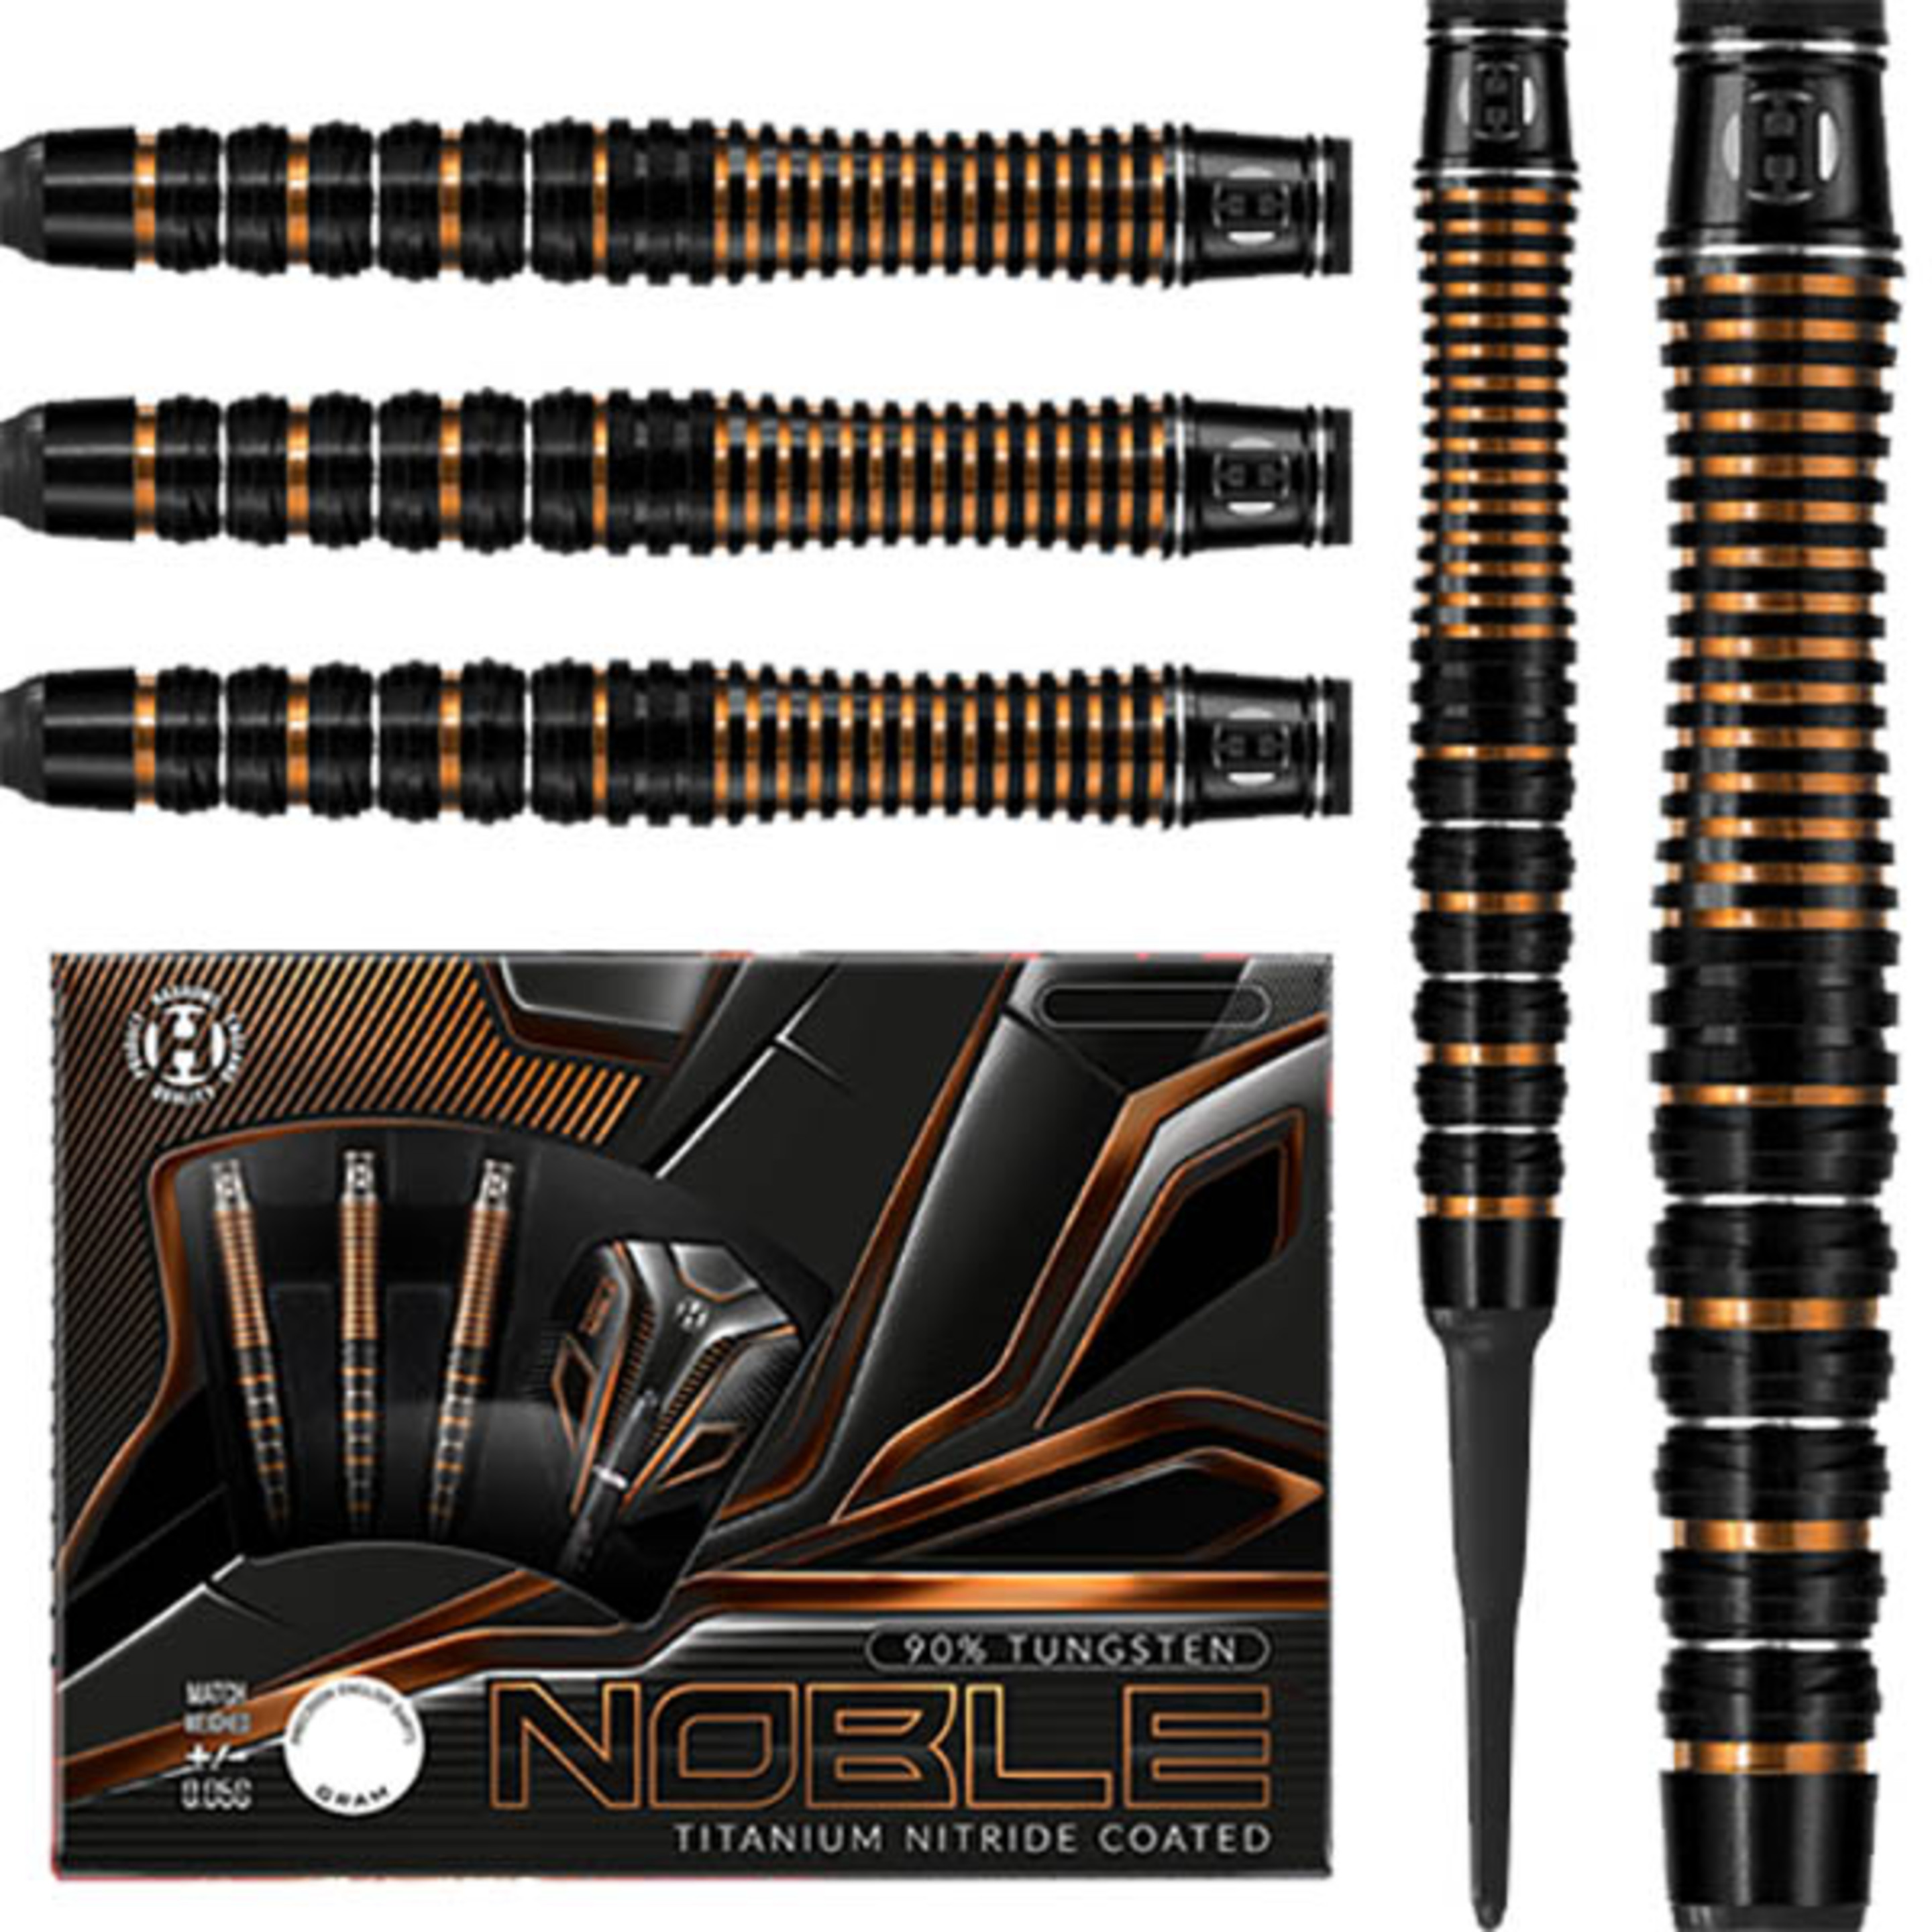 Dardos Harrows Darts Noble 90% 21g - Negro - Dardos Harrows Darts Noble 90% 21g  MKP